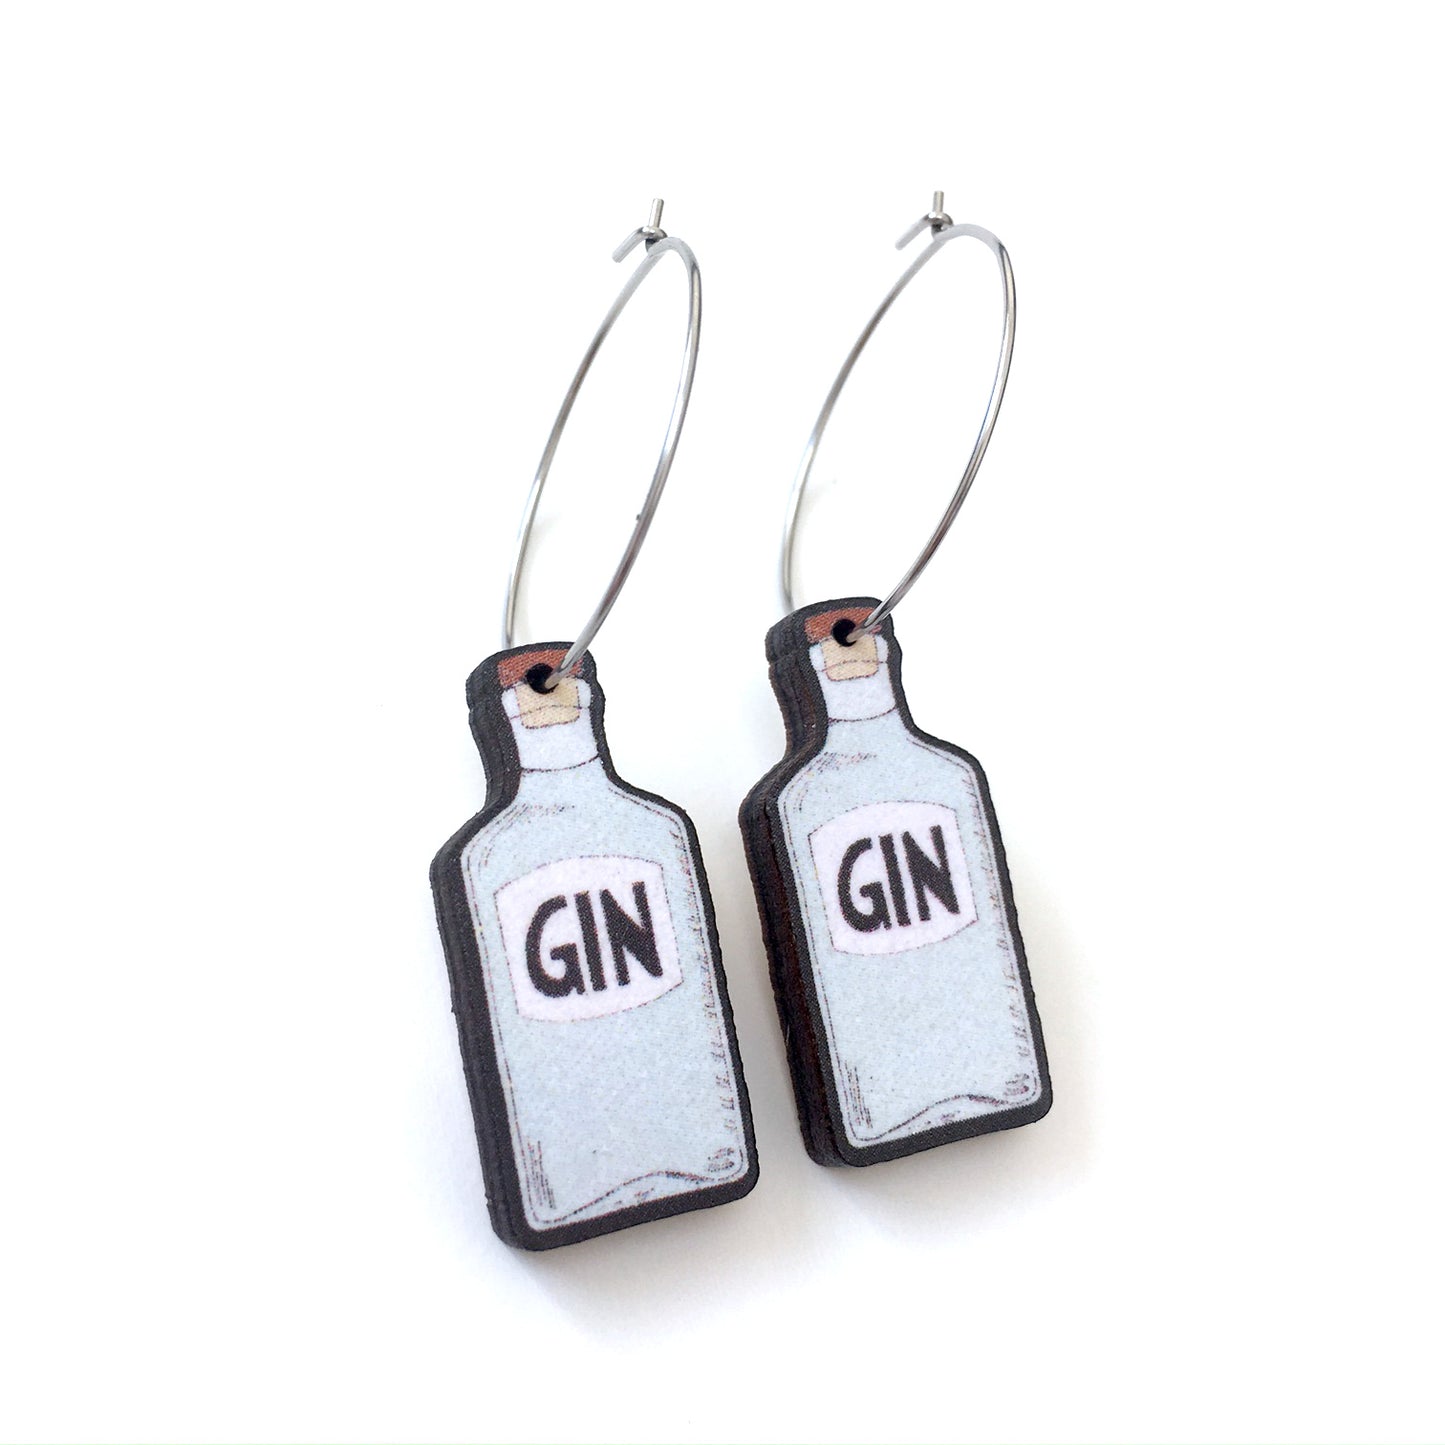 Gin bottle hoop drop earrings - Quirky best friend gift